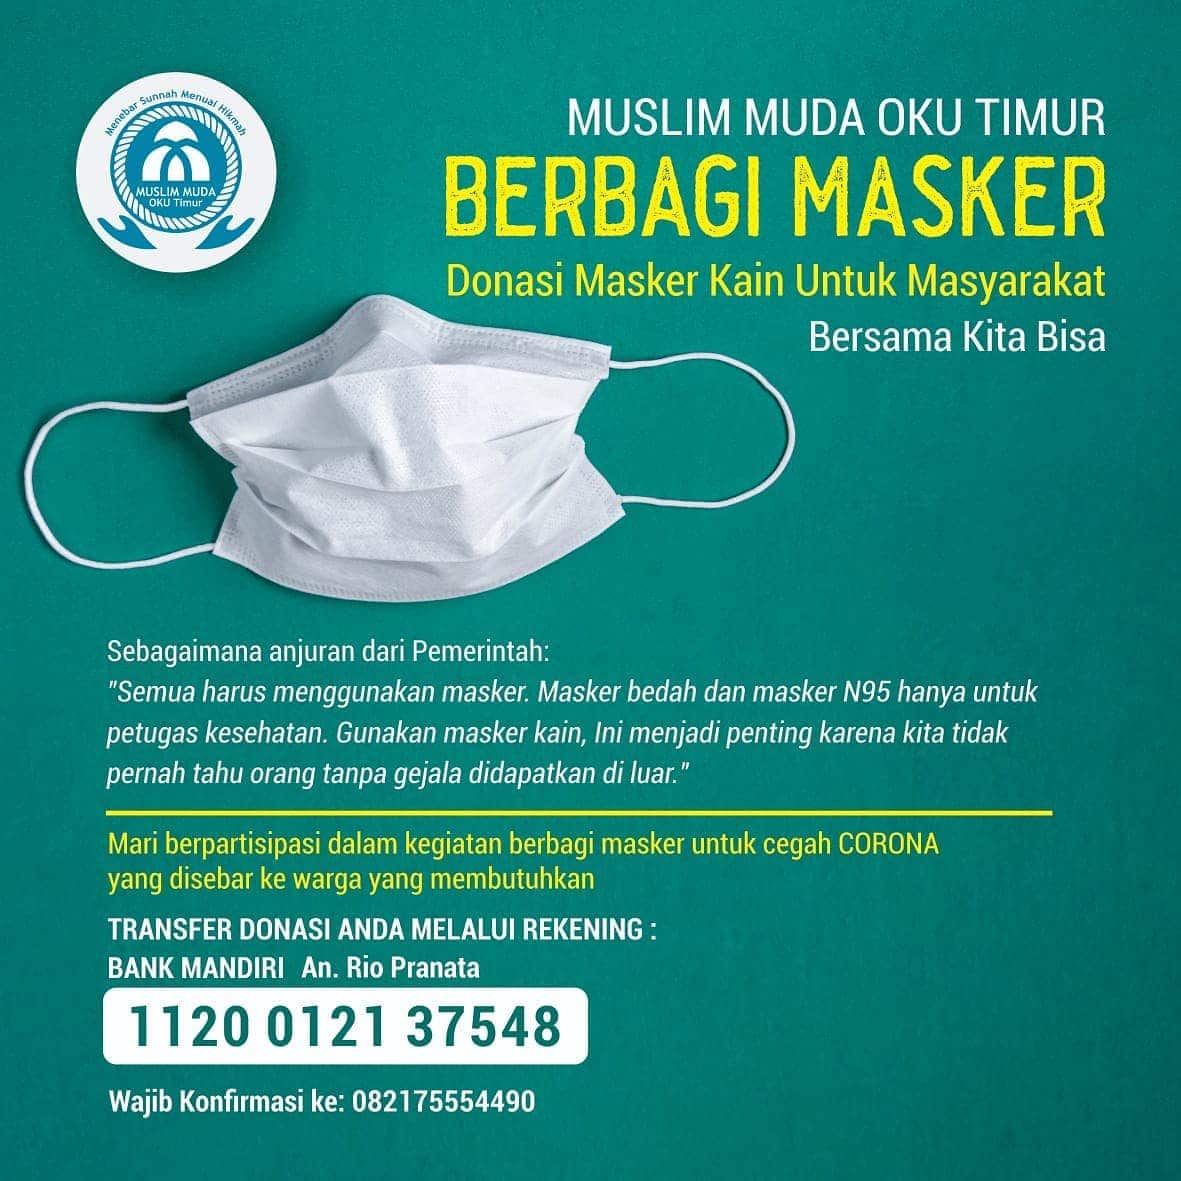 Donasi Masker Kain Untuk Masyarakat